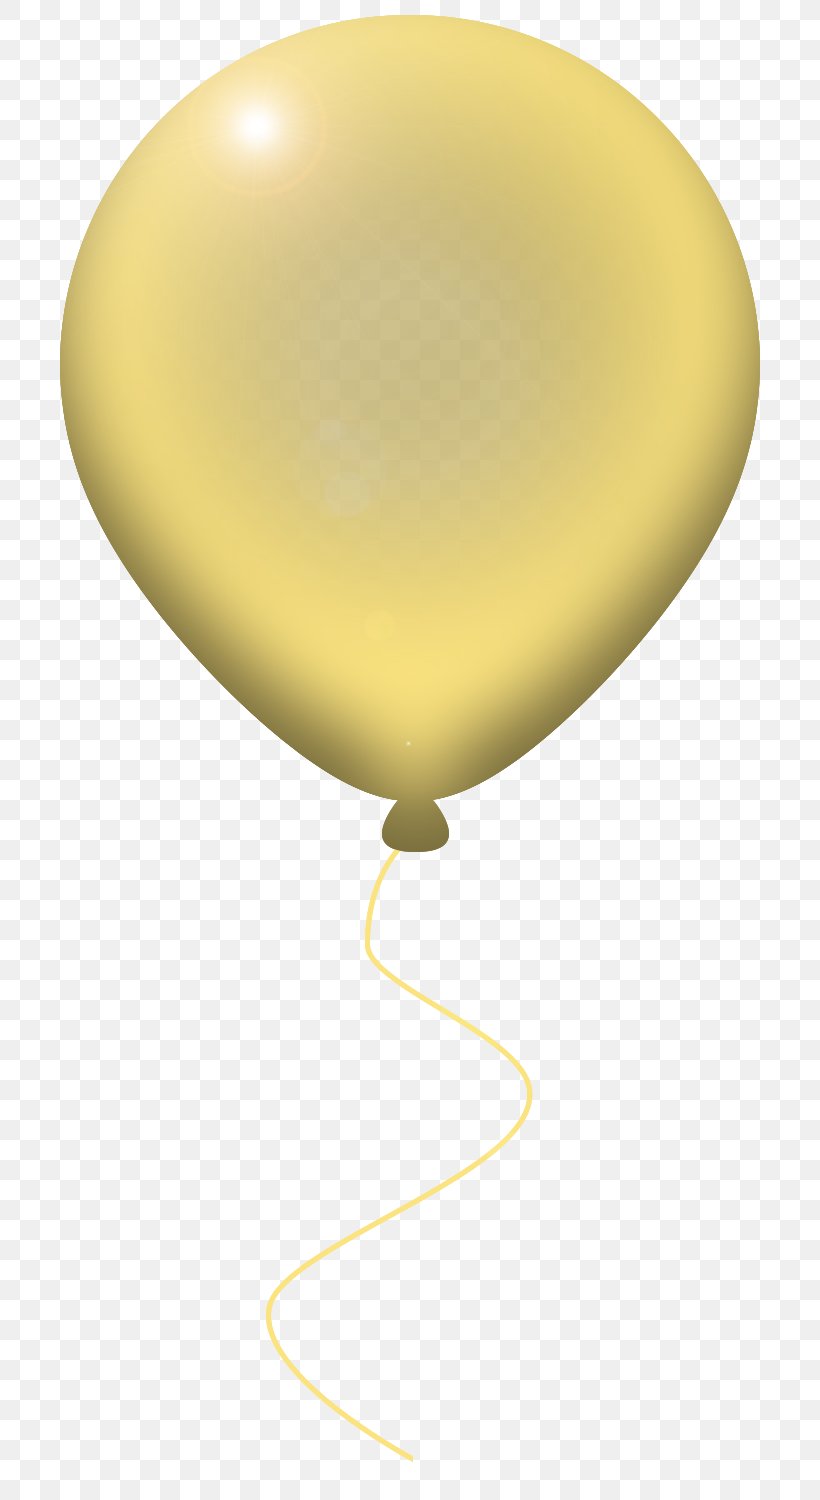 Light Fixture Balloon, PNG, 800x1500px, Light, Balloon, Light Fixture, Lighting, Yellow Download Free